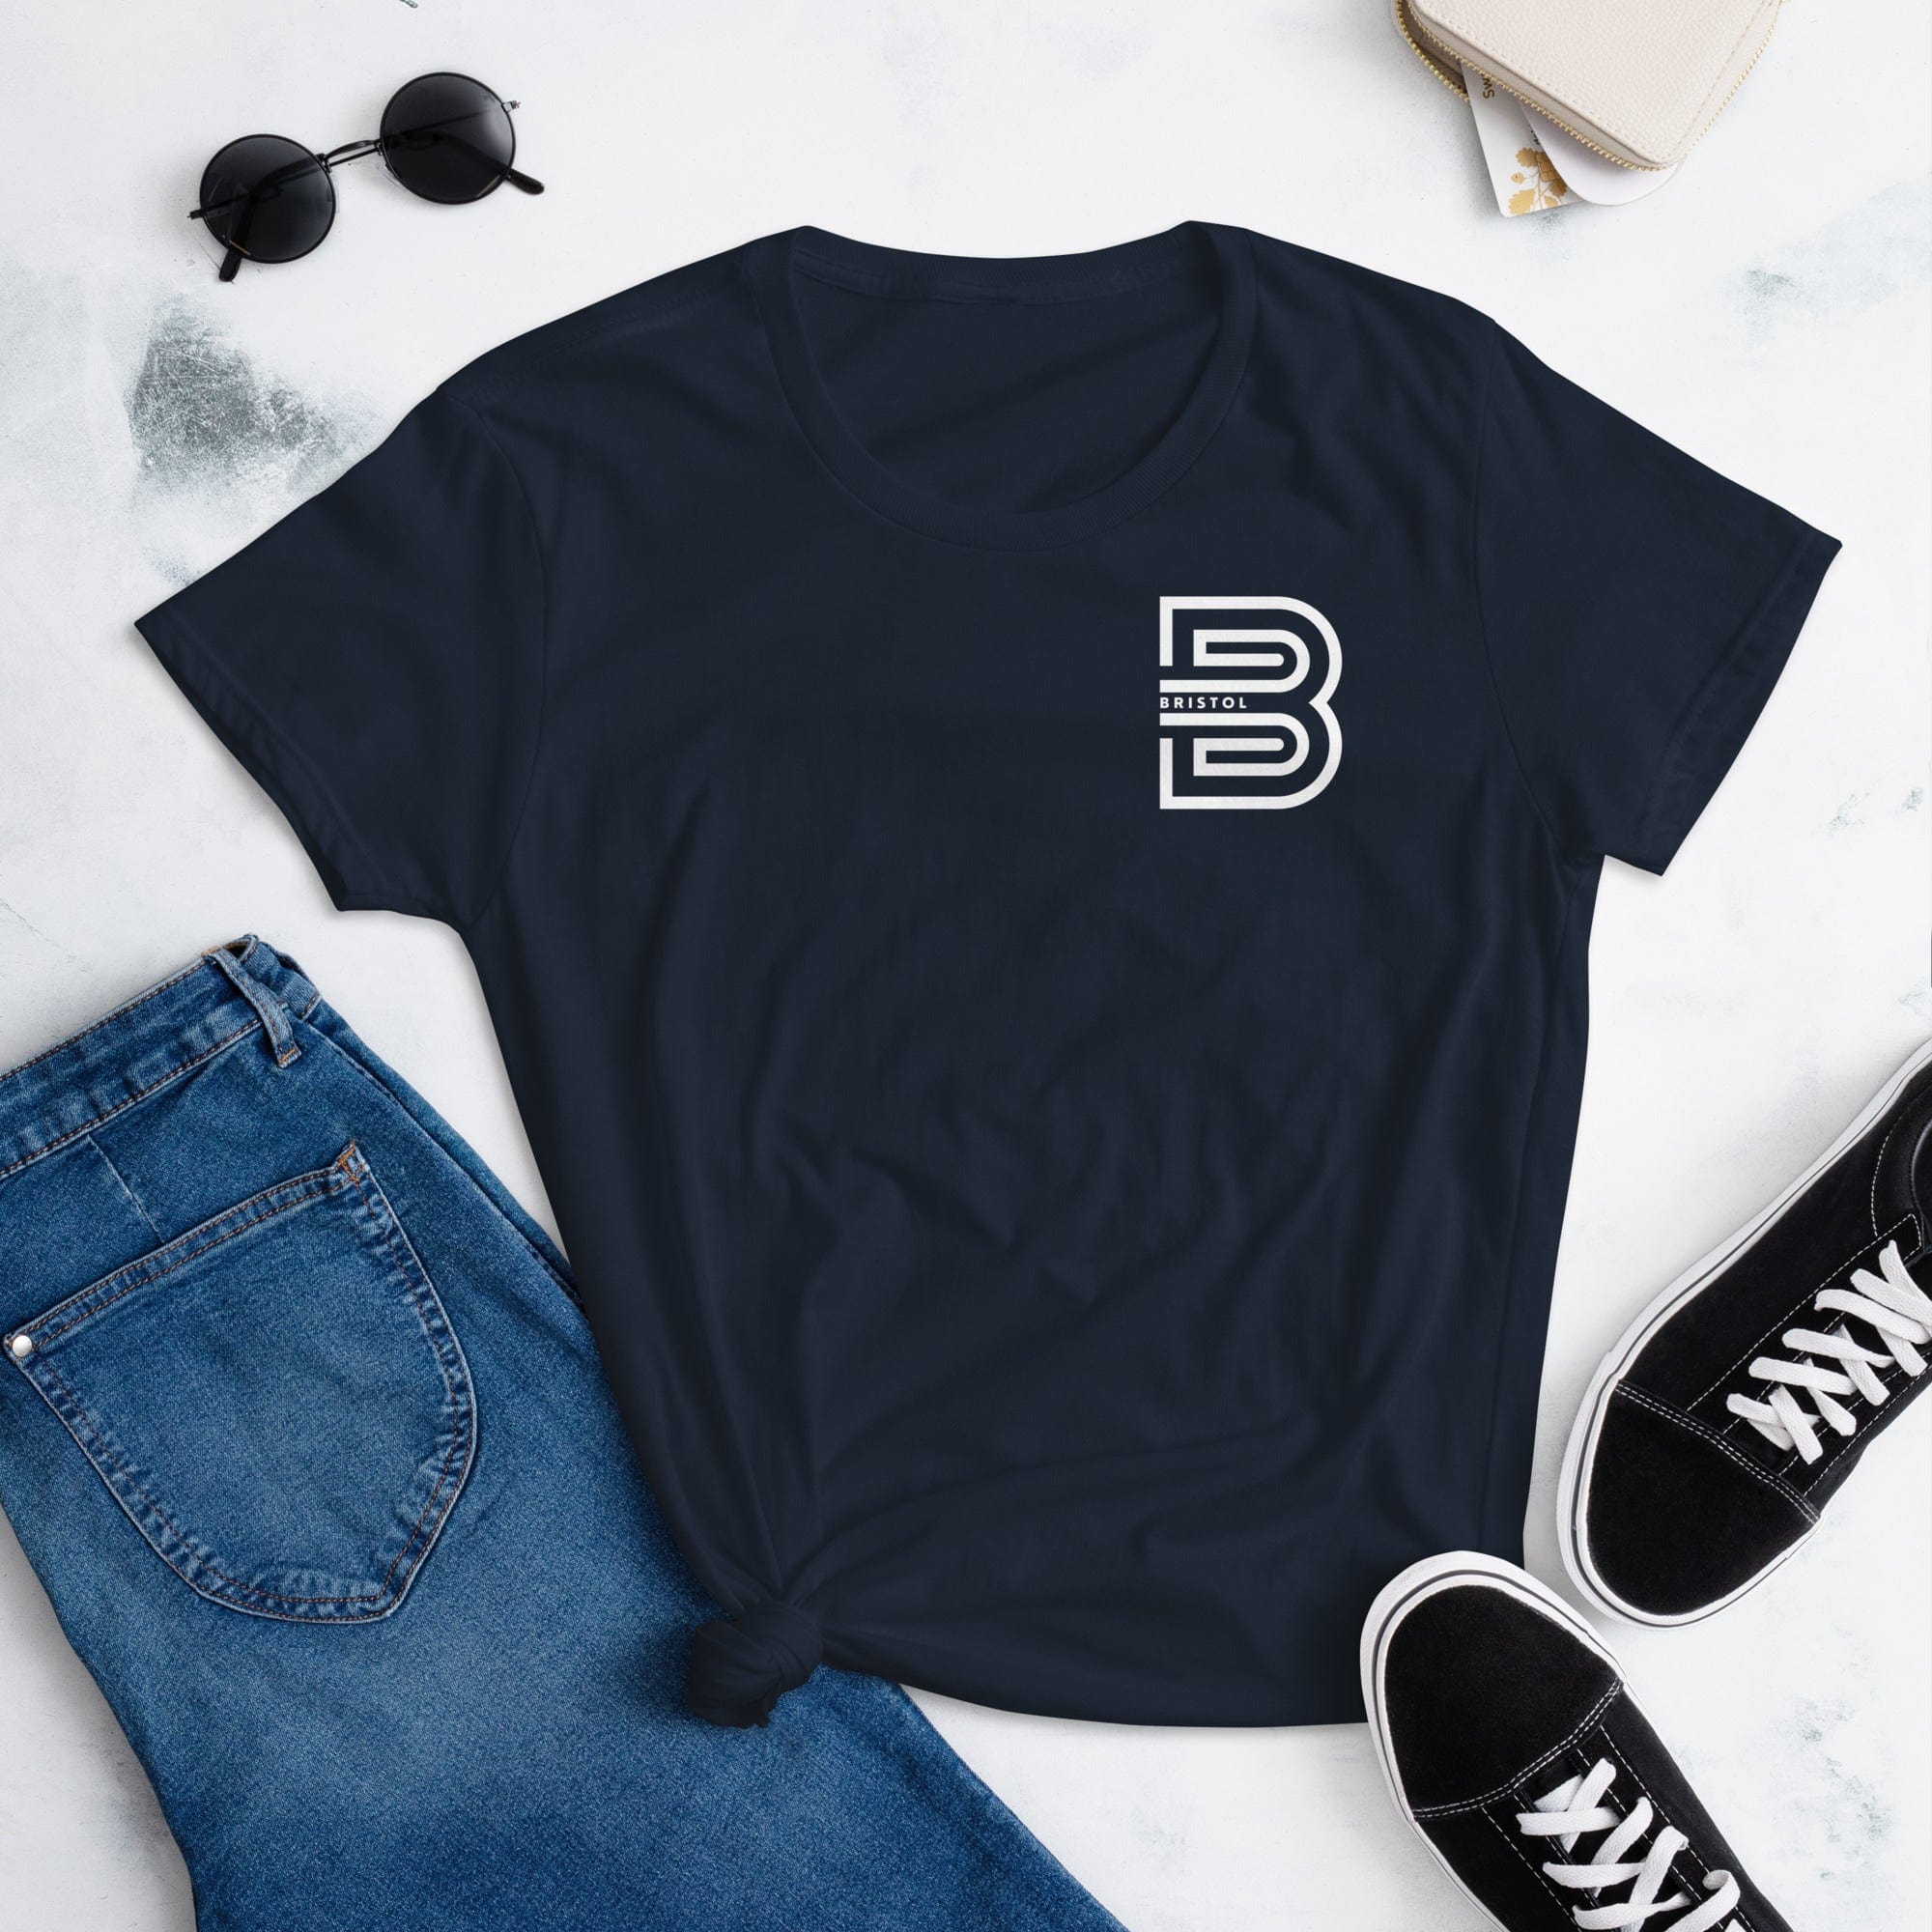 Bristol B Women's T-shirt Navy / S Shirts & Tops Jolly & Goode